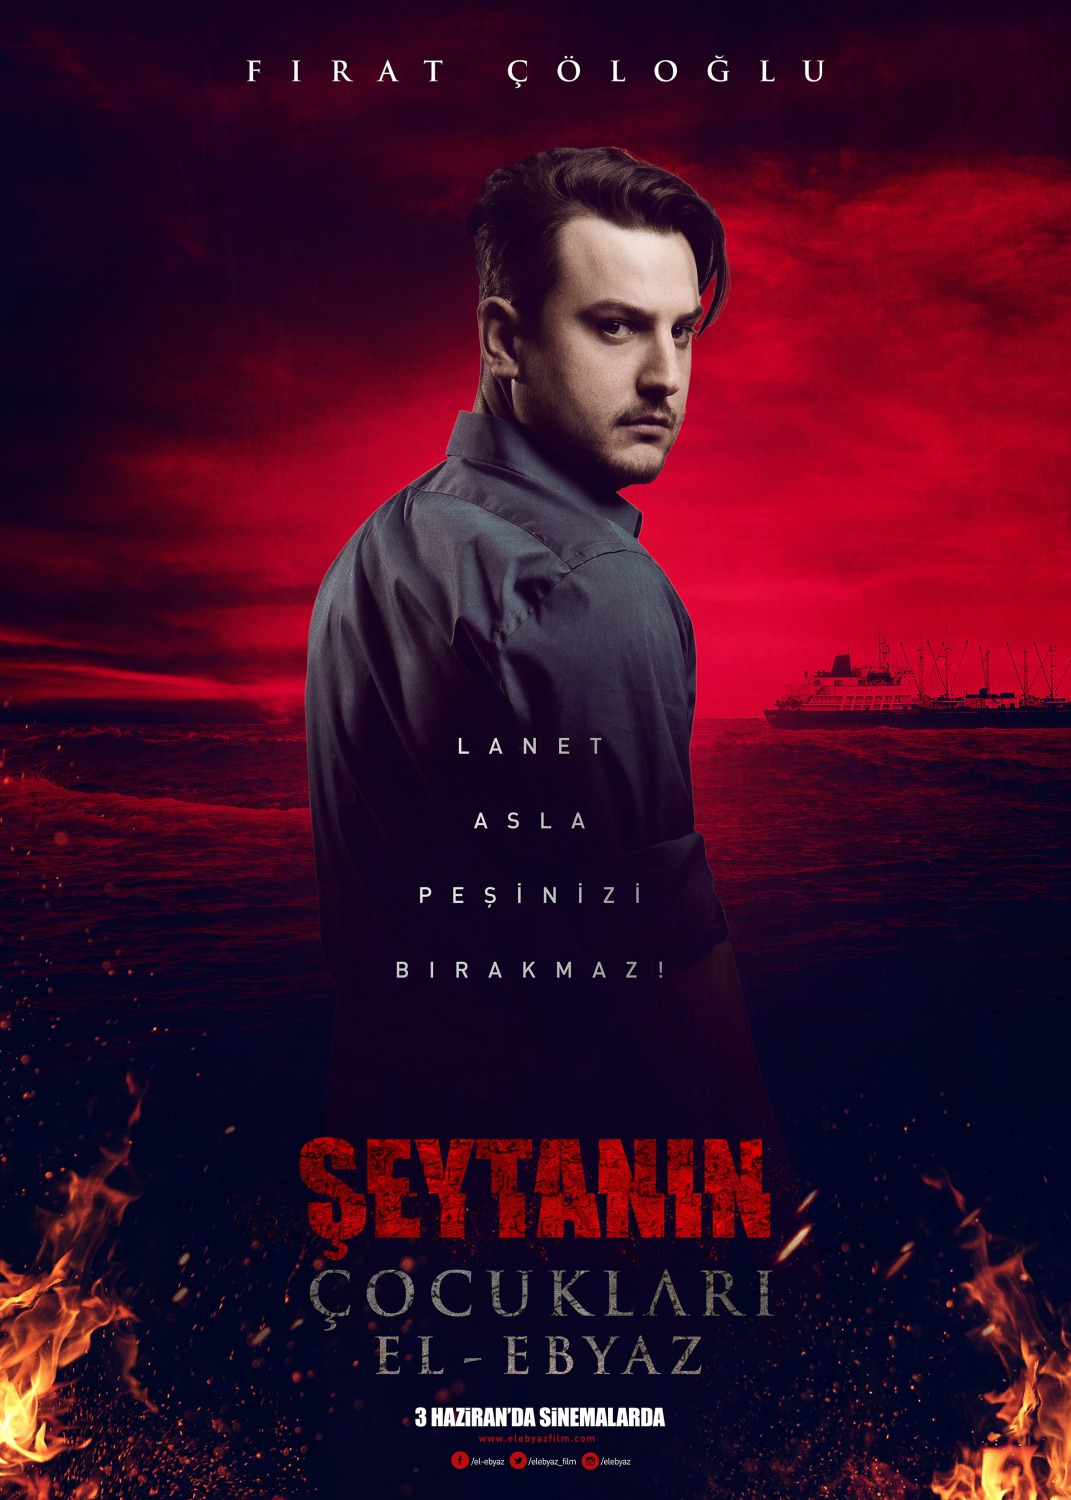 Extra Large Movie Poster Image for Şeytanın Çocukları-El Ebyaz (#6 of 7)